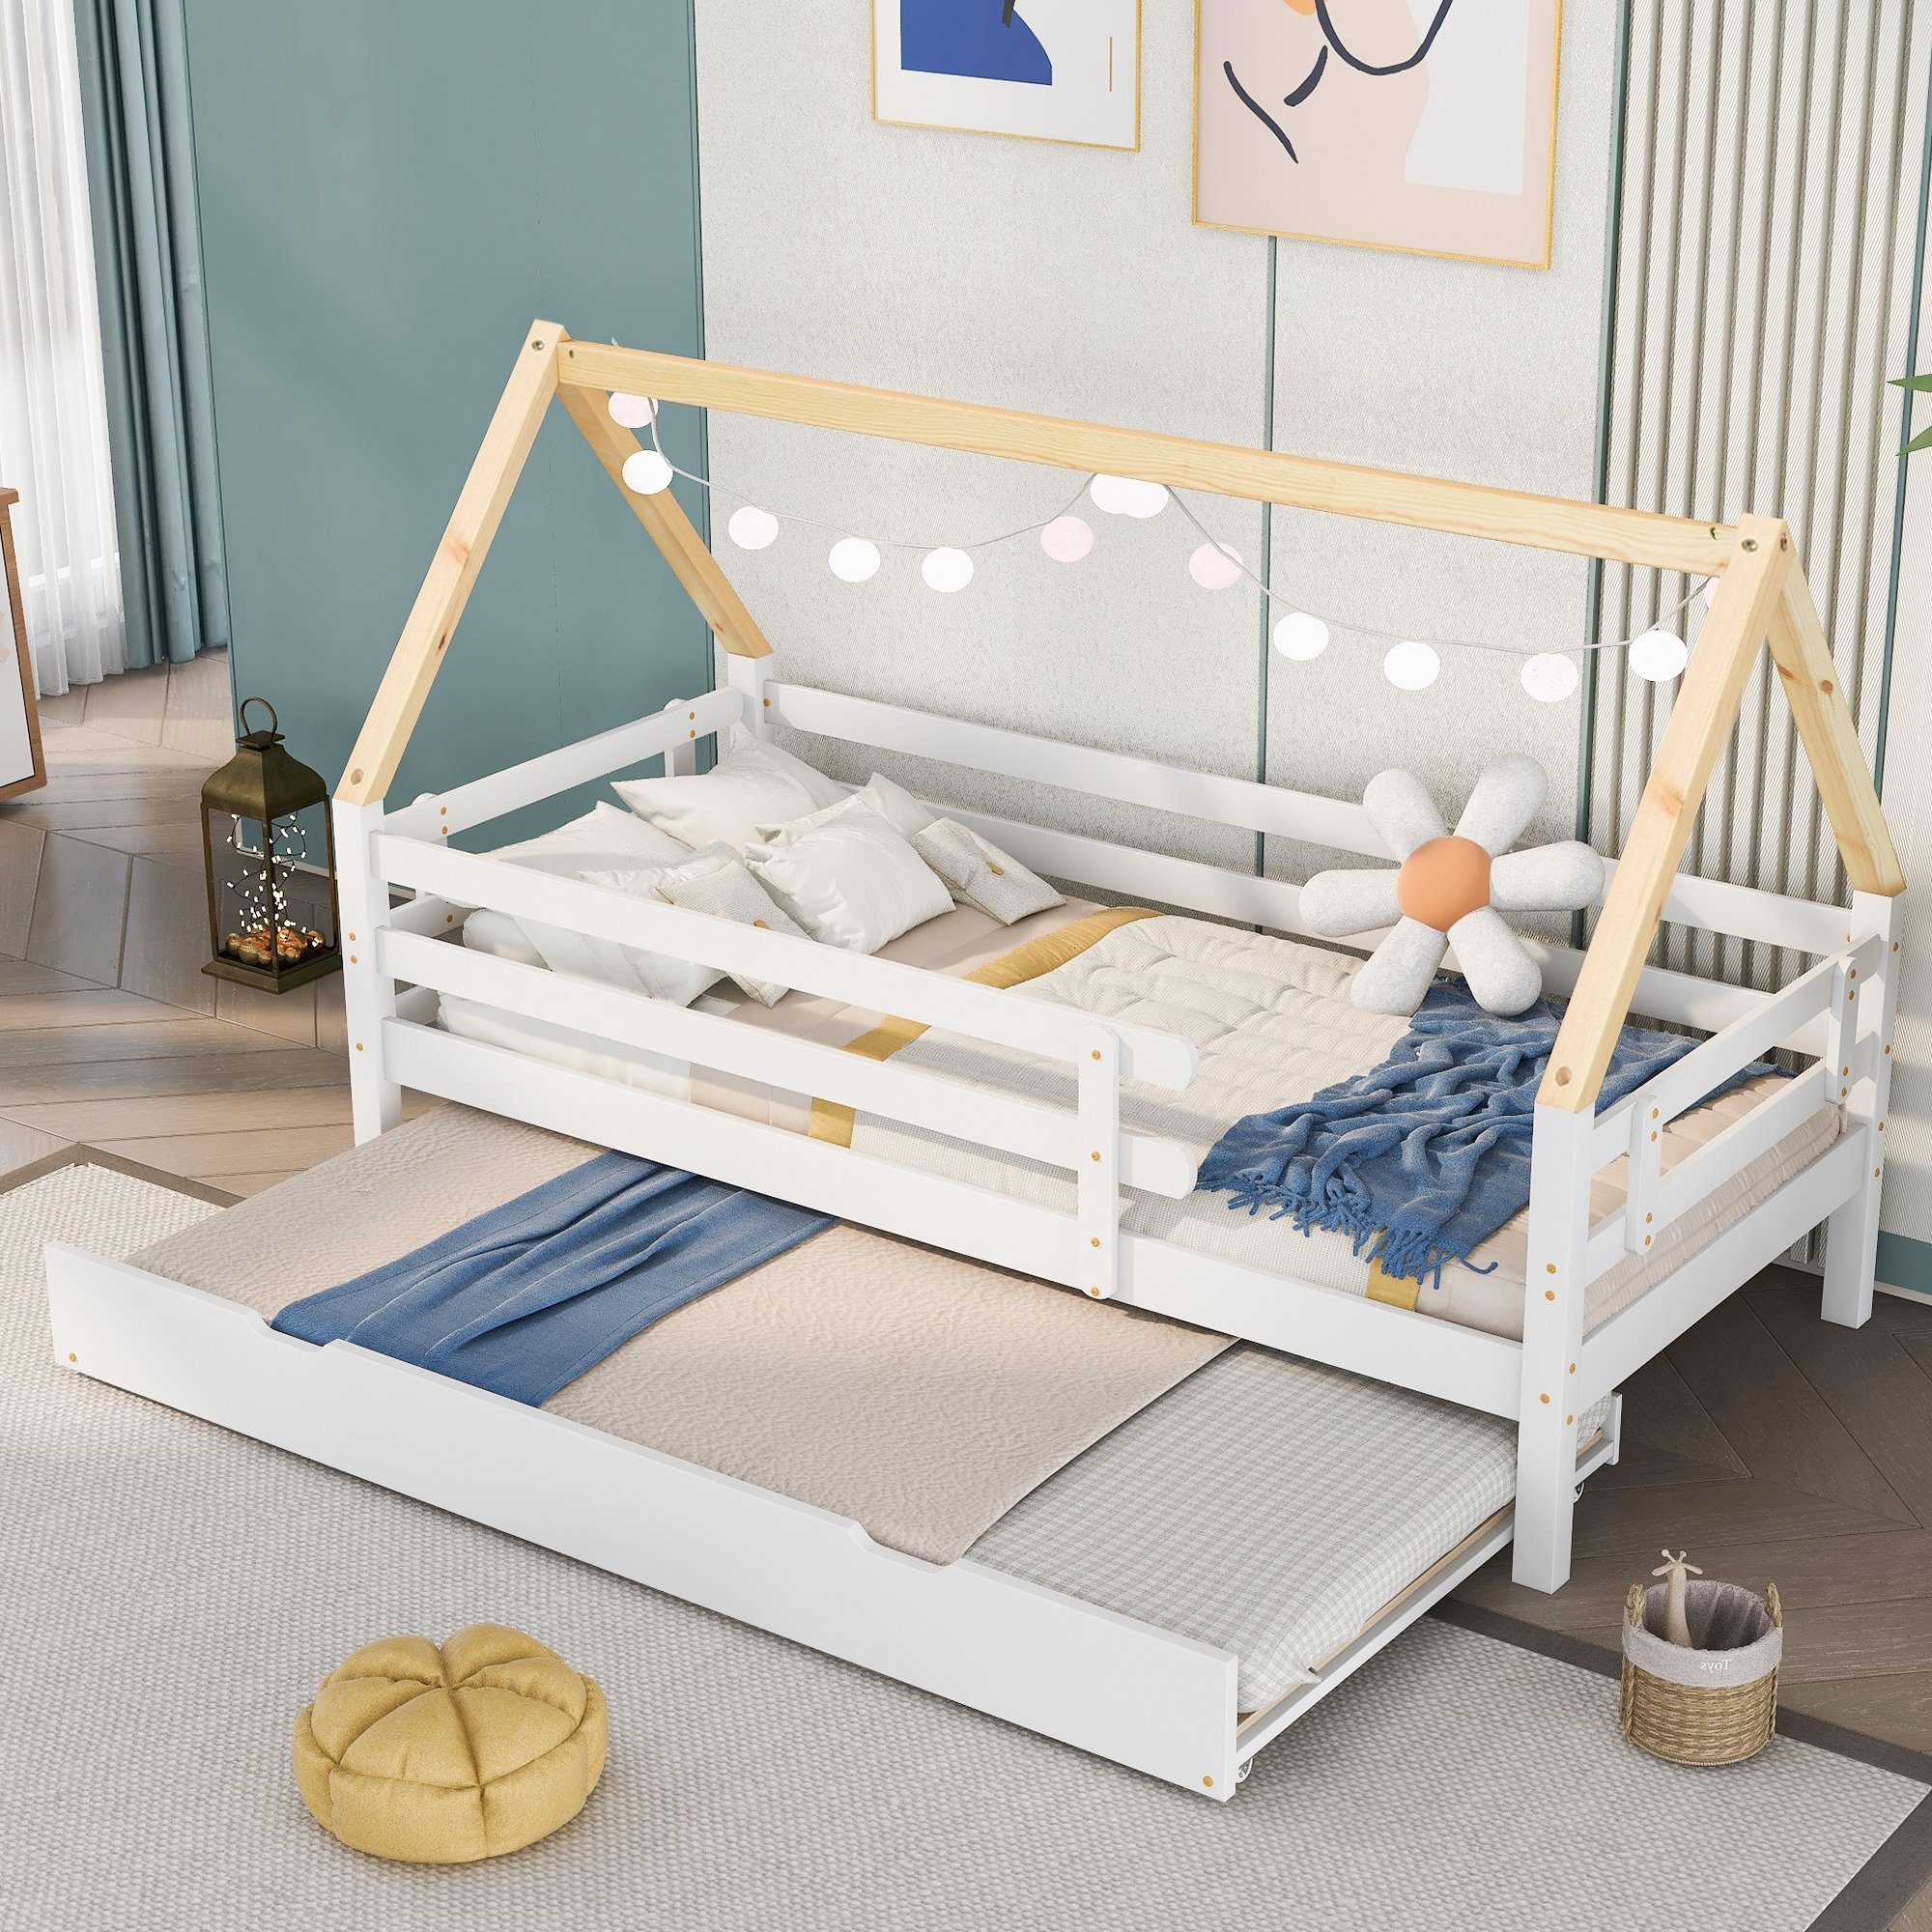 SOFTWEARY Kinderbett Hausbett mit Gastbett und Lattenrost (90x200 cm), Einzelbett aus Kiefer, inkl. Rausfallschutz